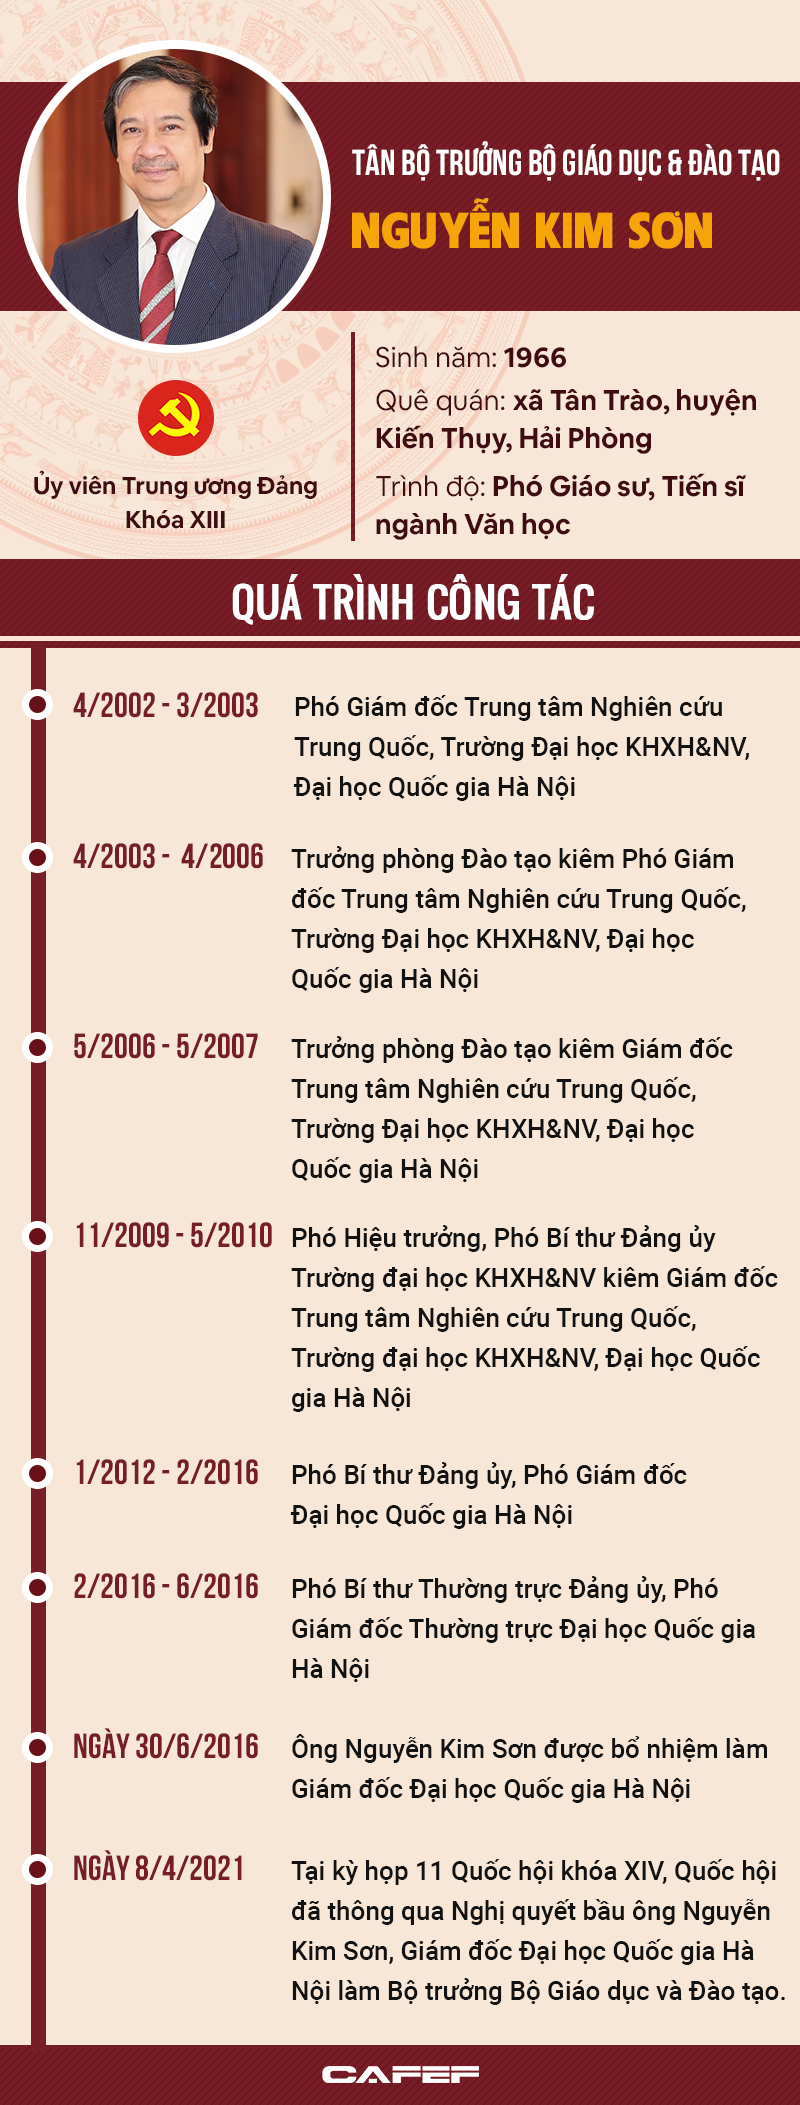 Chân dung tân Bộ trưởng Giáo dục và Đào tạo Nguyễn Kim Sơn - Ảnh 1.